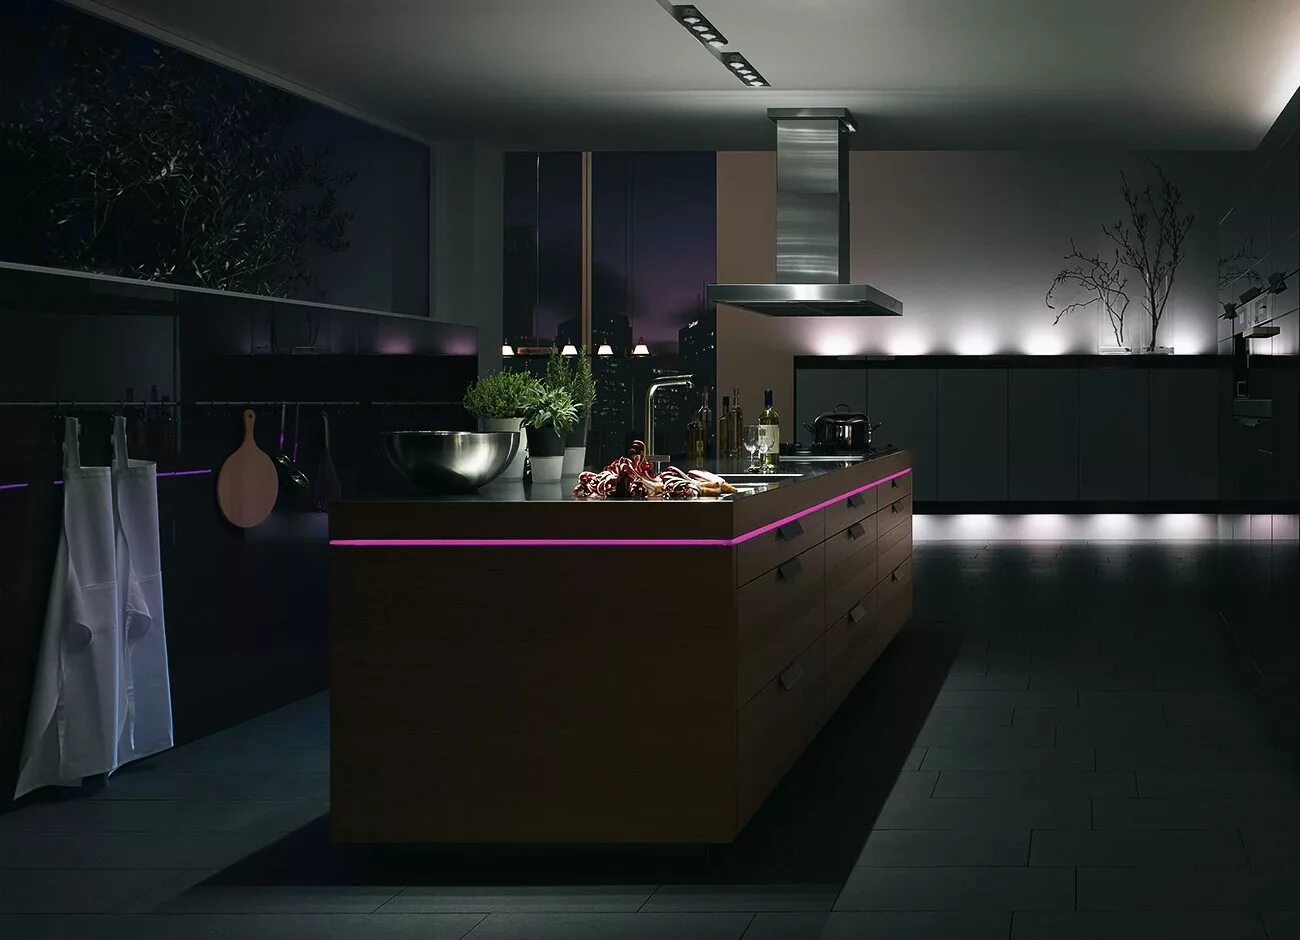 Клип ночью на кухне. Подсветка для кухни. Стильный интерьер кухни. Современная кухня с подсветкой. Красивая подсветка кухни.